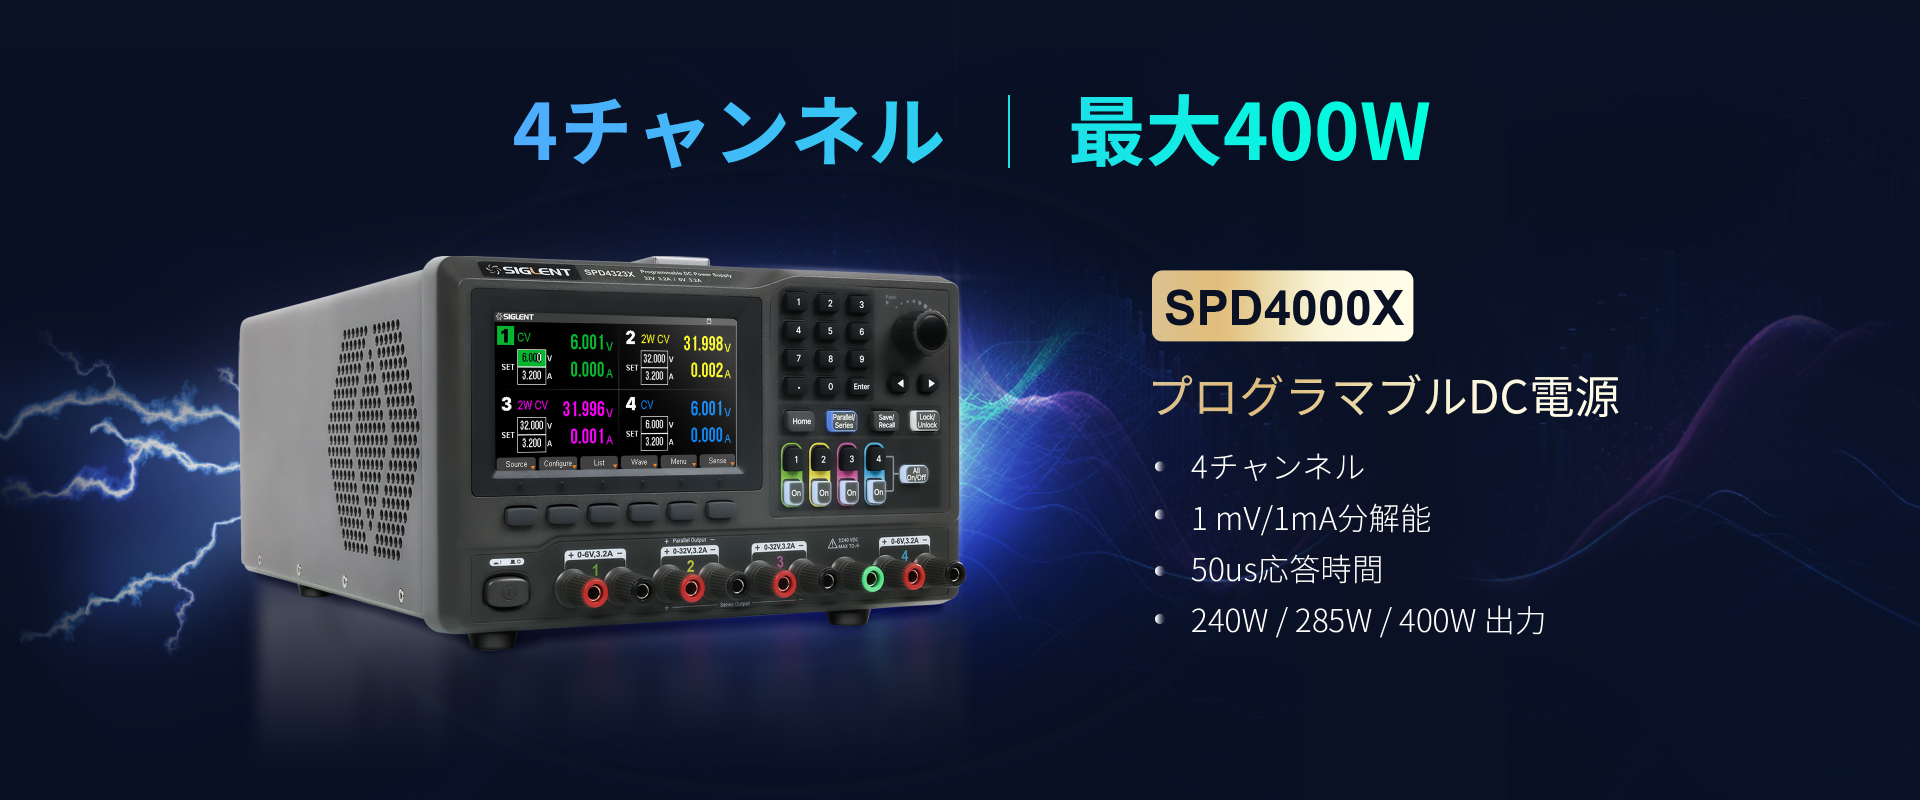 SPD4000